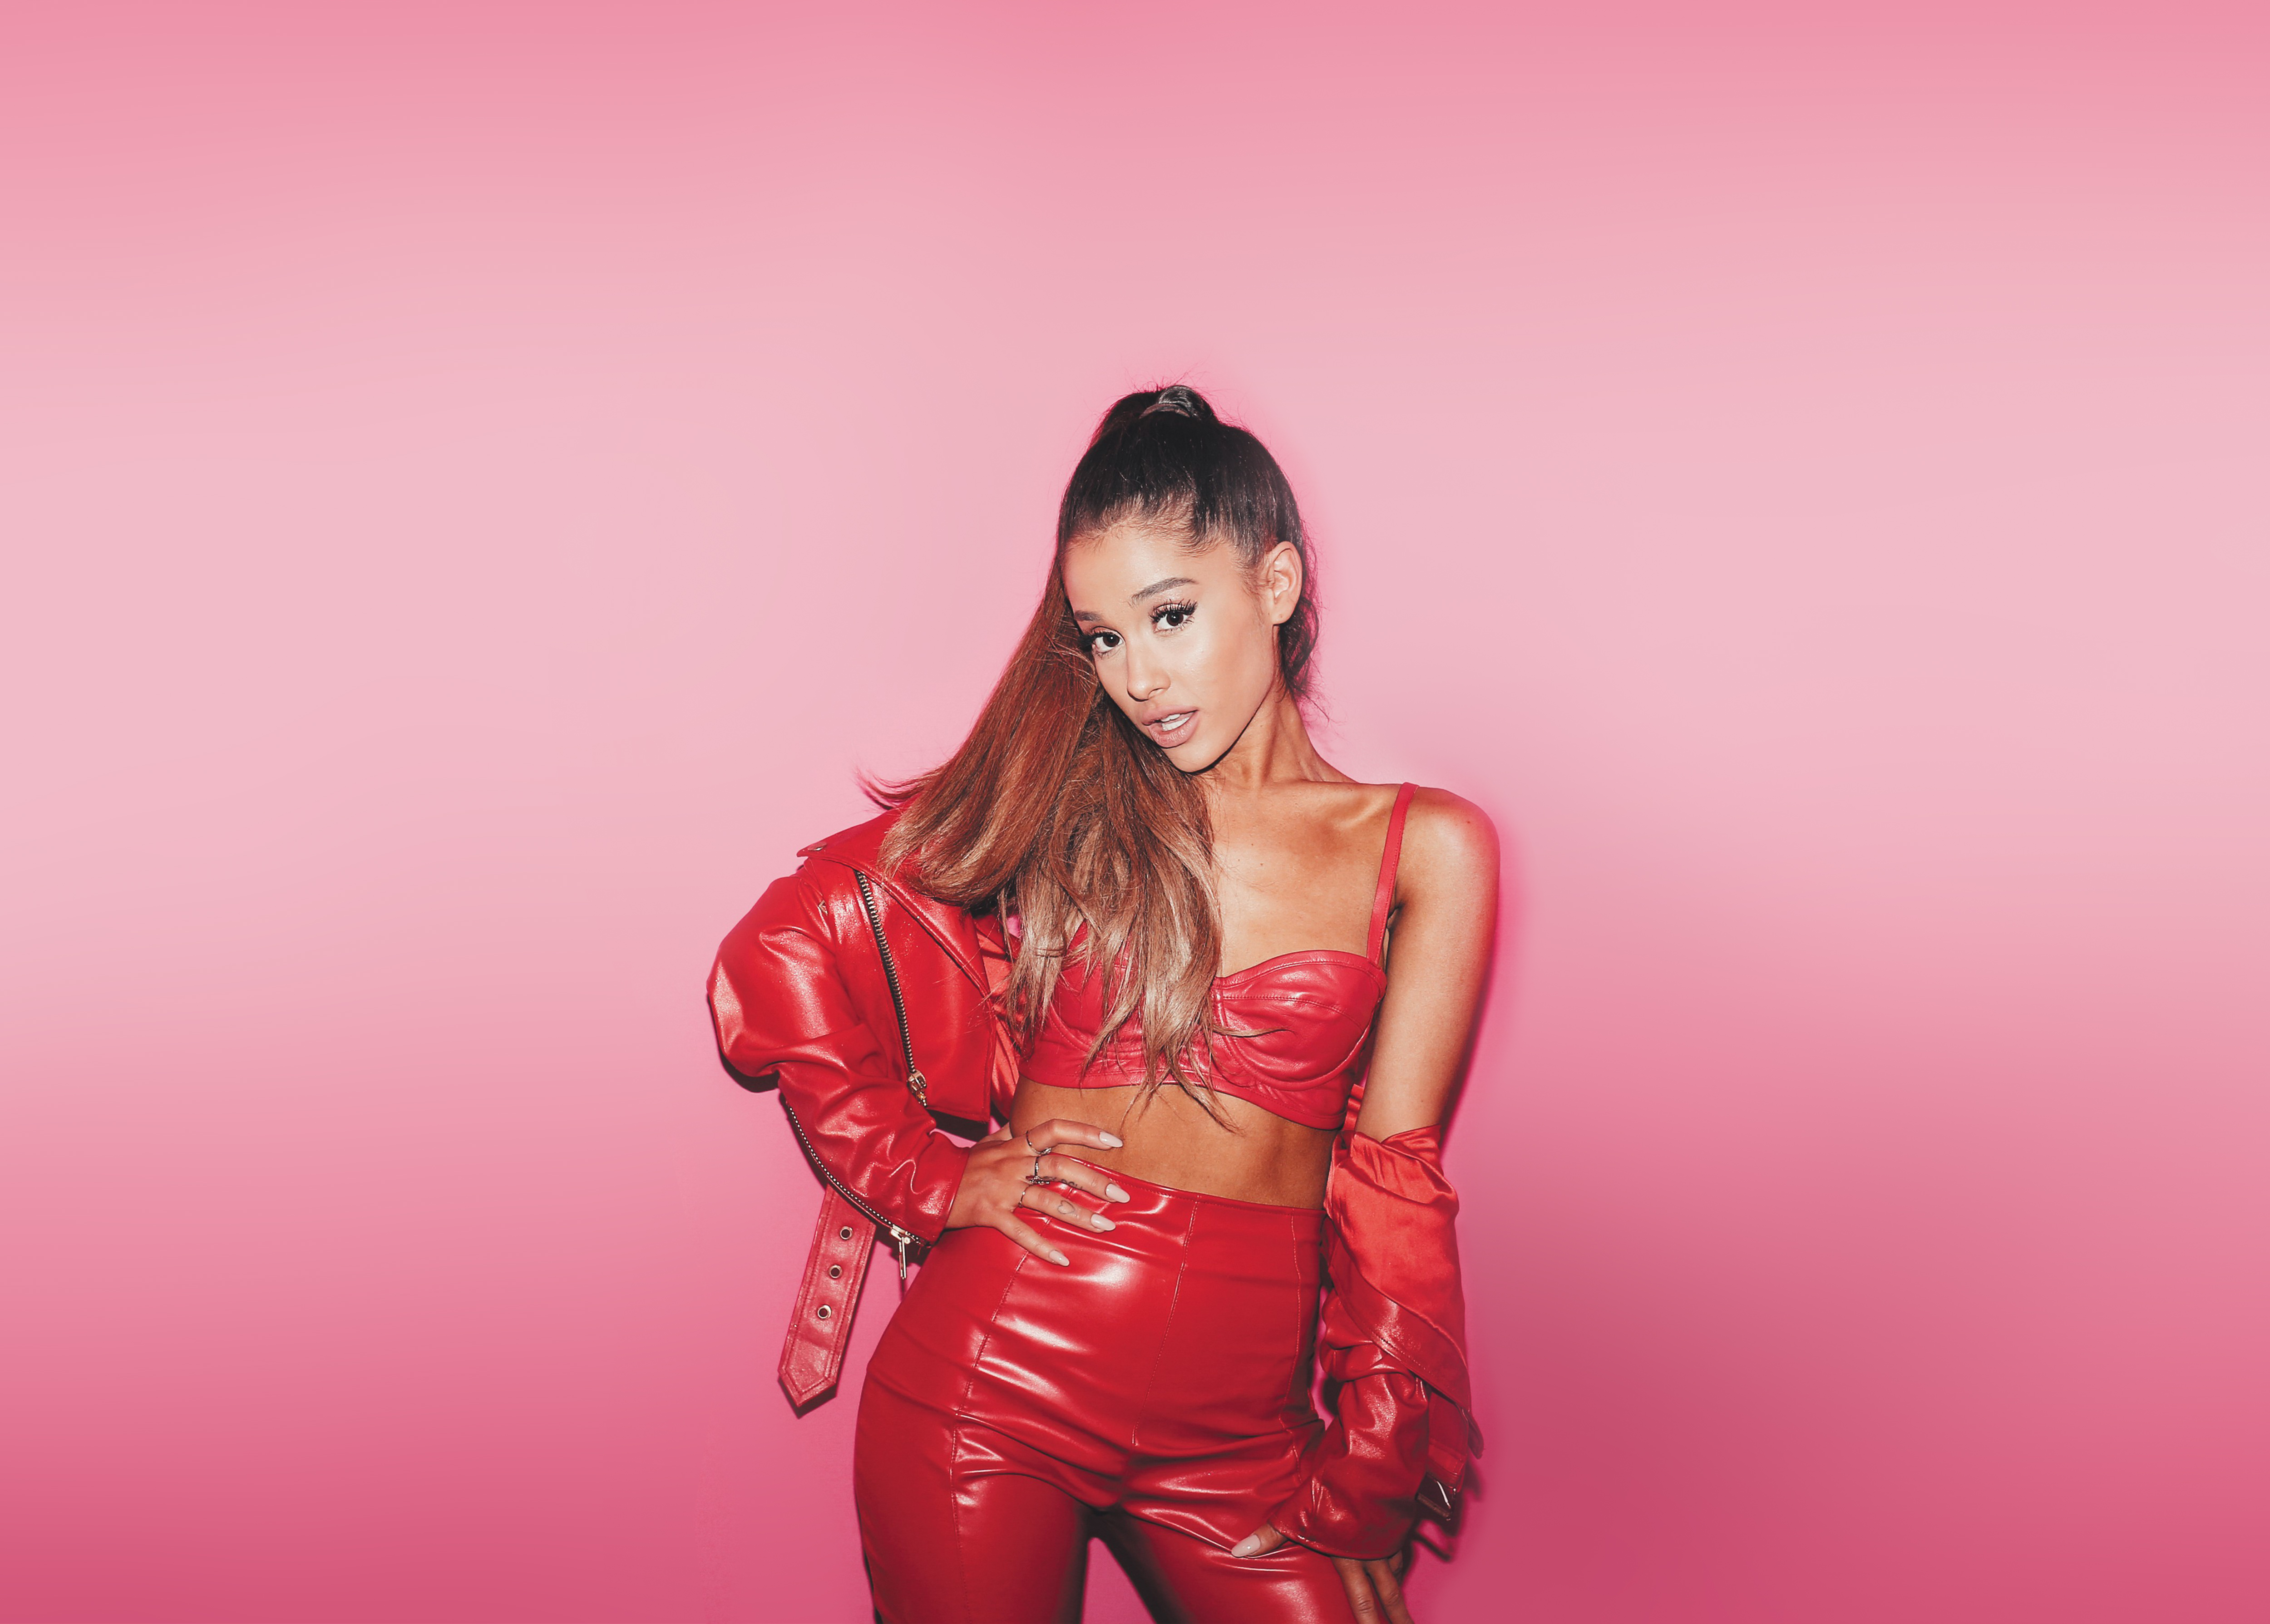 Ariana Grande Wallpaper for PC  Ariana grande wallpaper, Ariana grande  album, Ariana grande